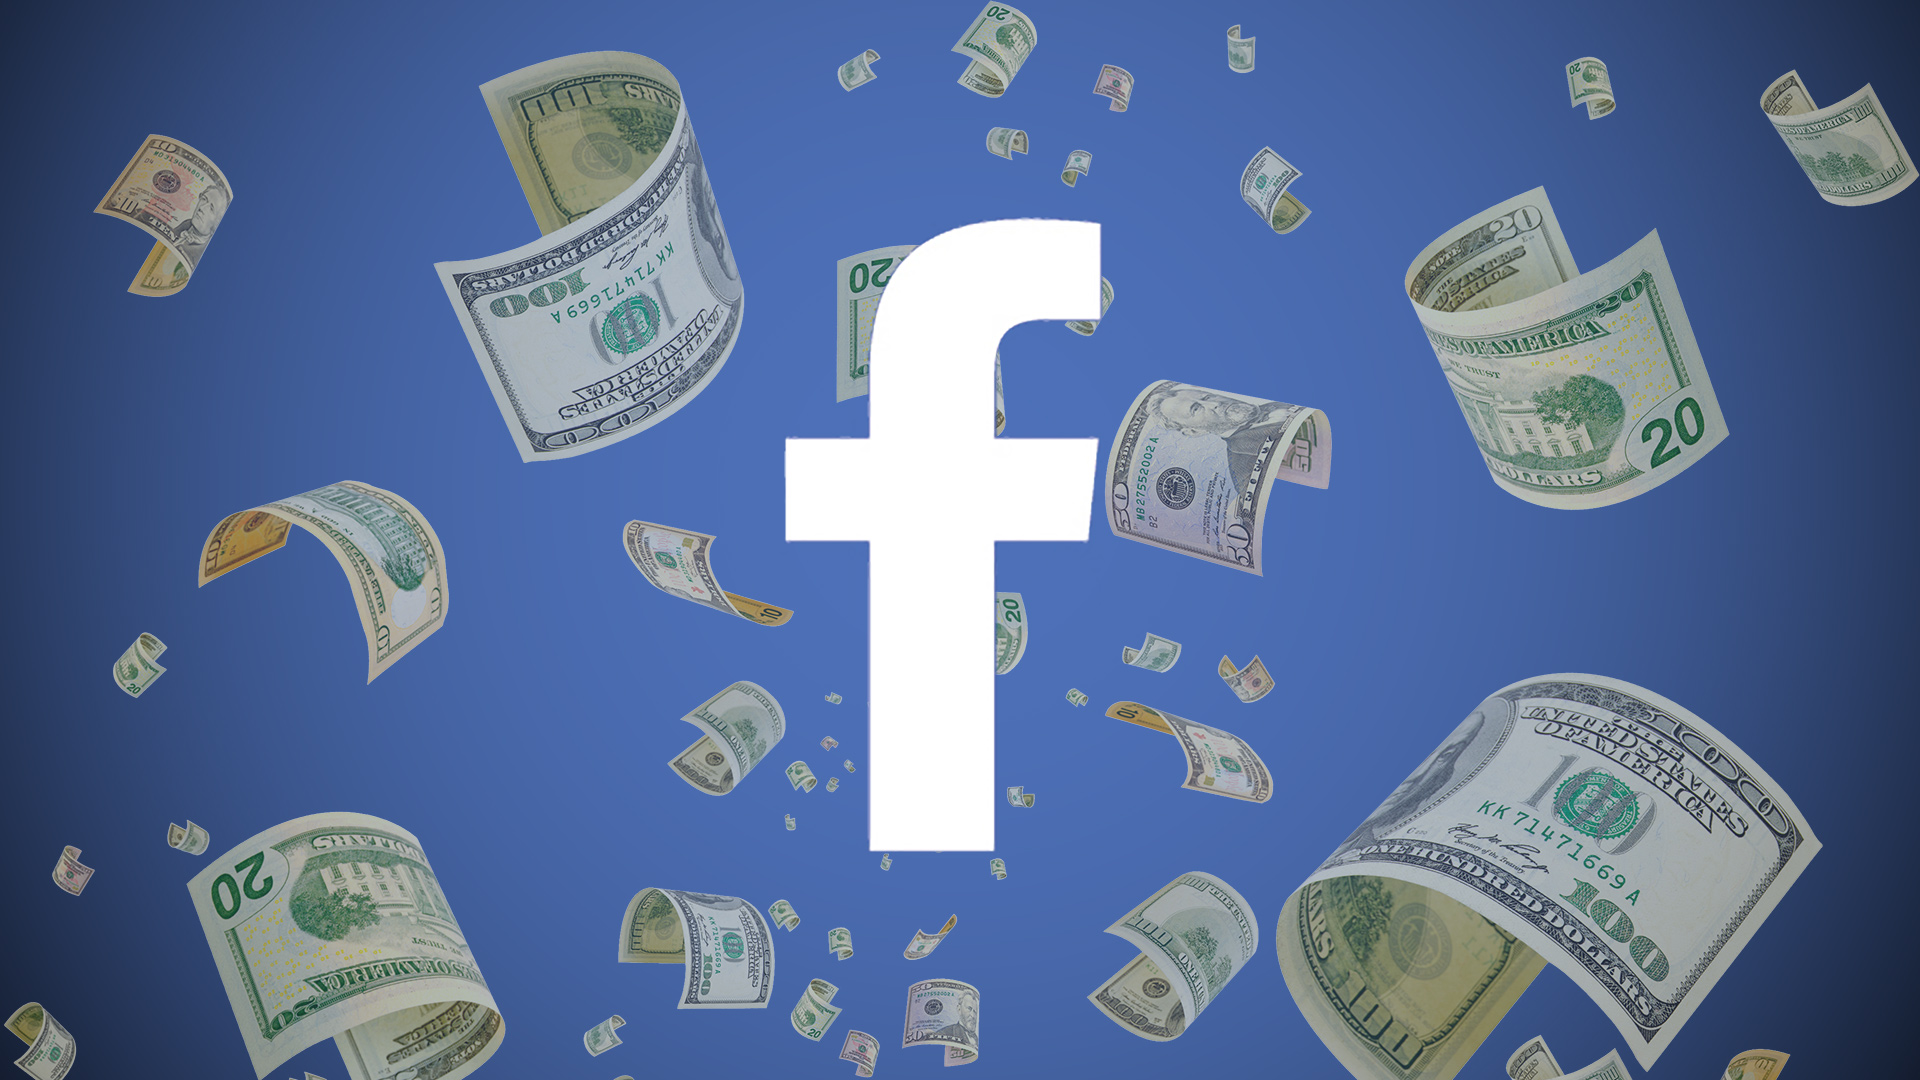 Facebook'a verilen 5 milyar dolar ceza, şirketin kasasına 10 milyar dolar girmesine neden oldu